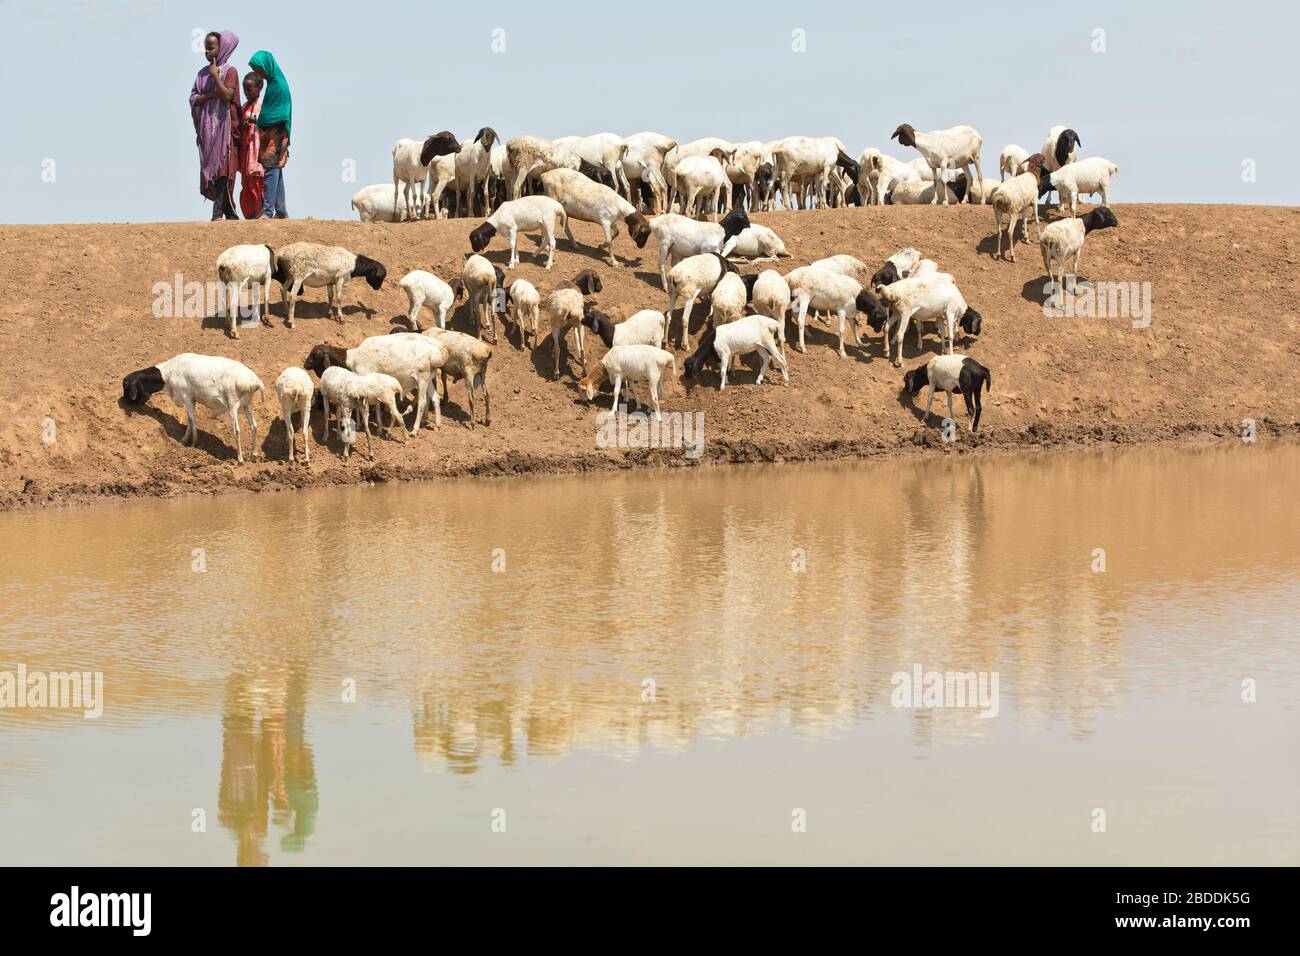 14.11.2019, Gode, région somalienne, Ethiopie - les filles gardent un troupeau africain de chèvres à un creux d'eau. Documentation du projet de l'organisation de secours Banque D'Images